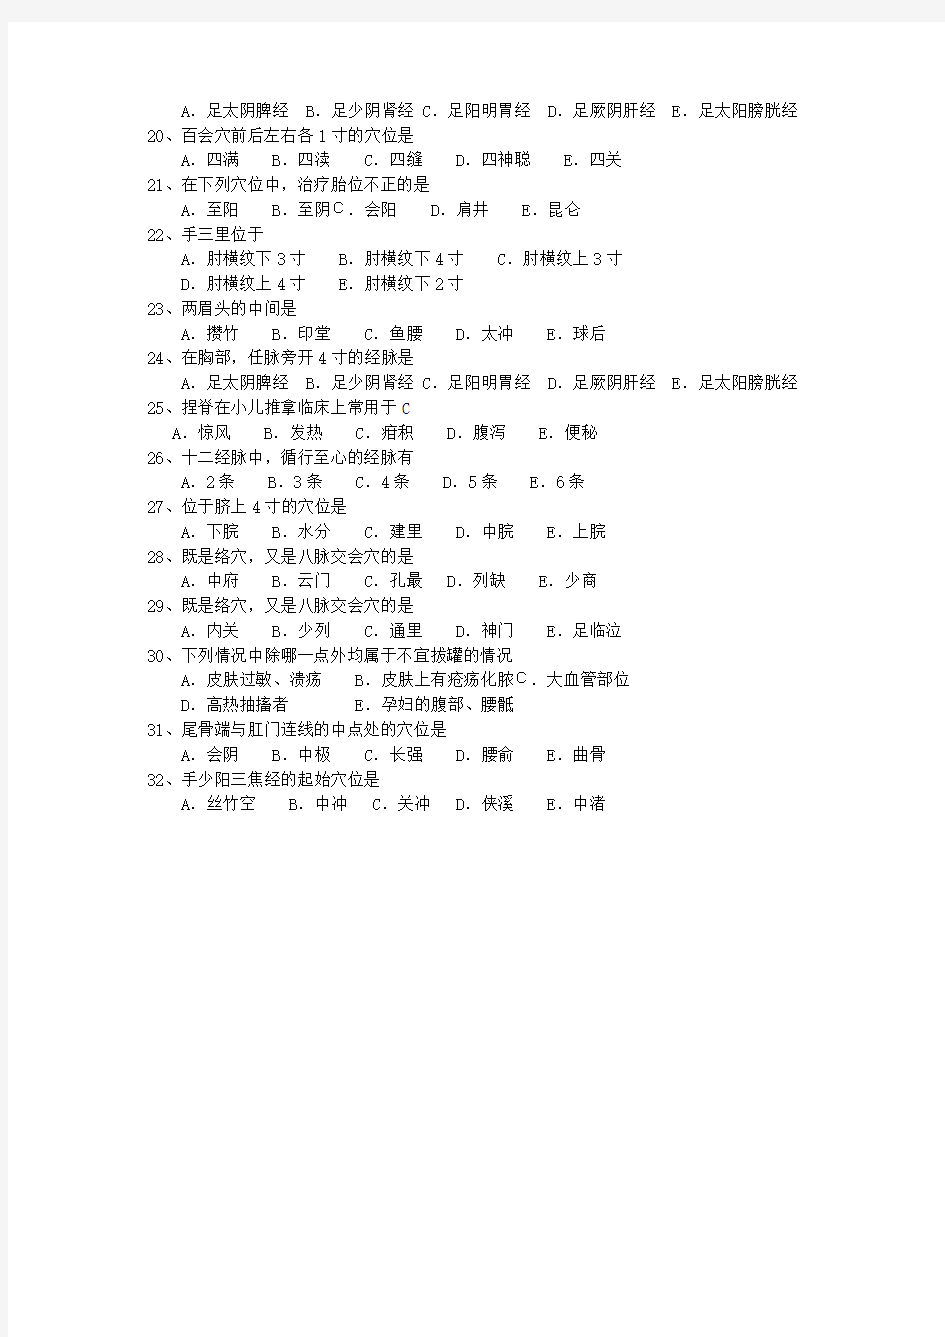 2013年青海省针灸推拿学院考研最新考试试题库(完整版)